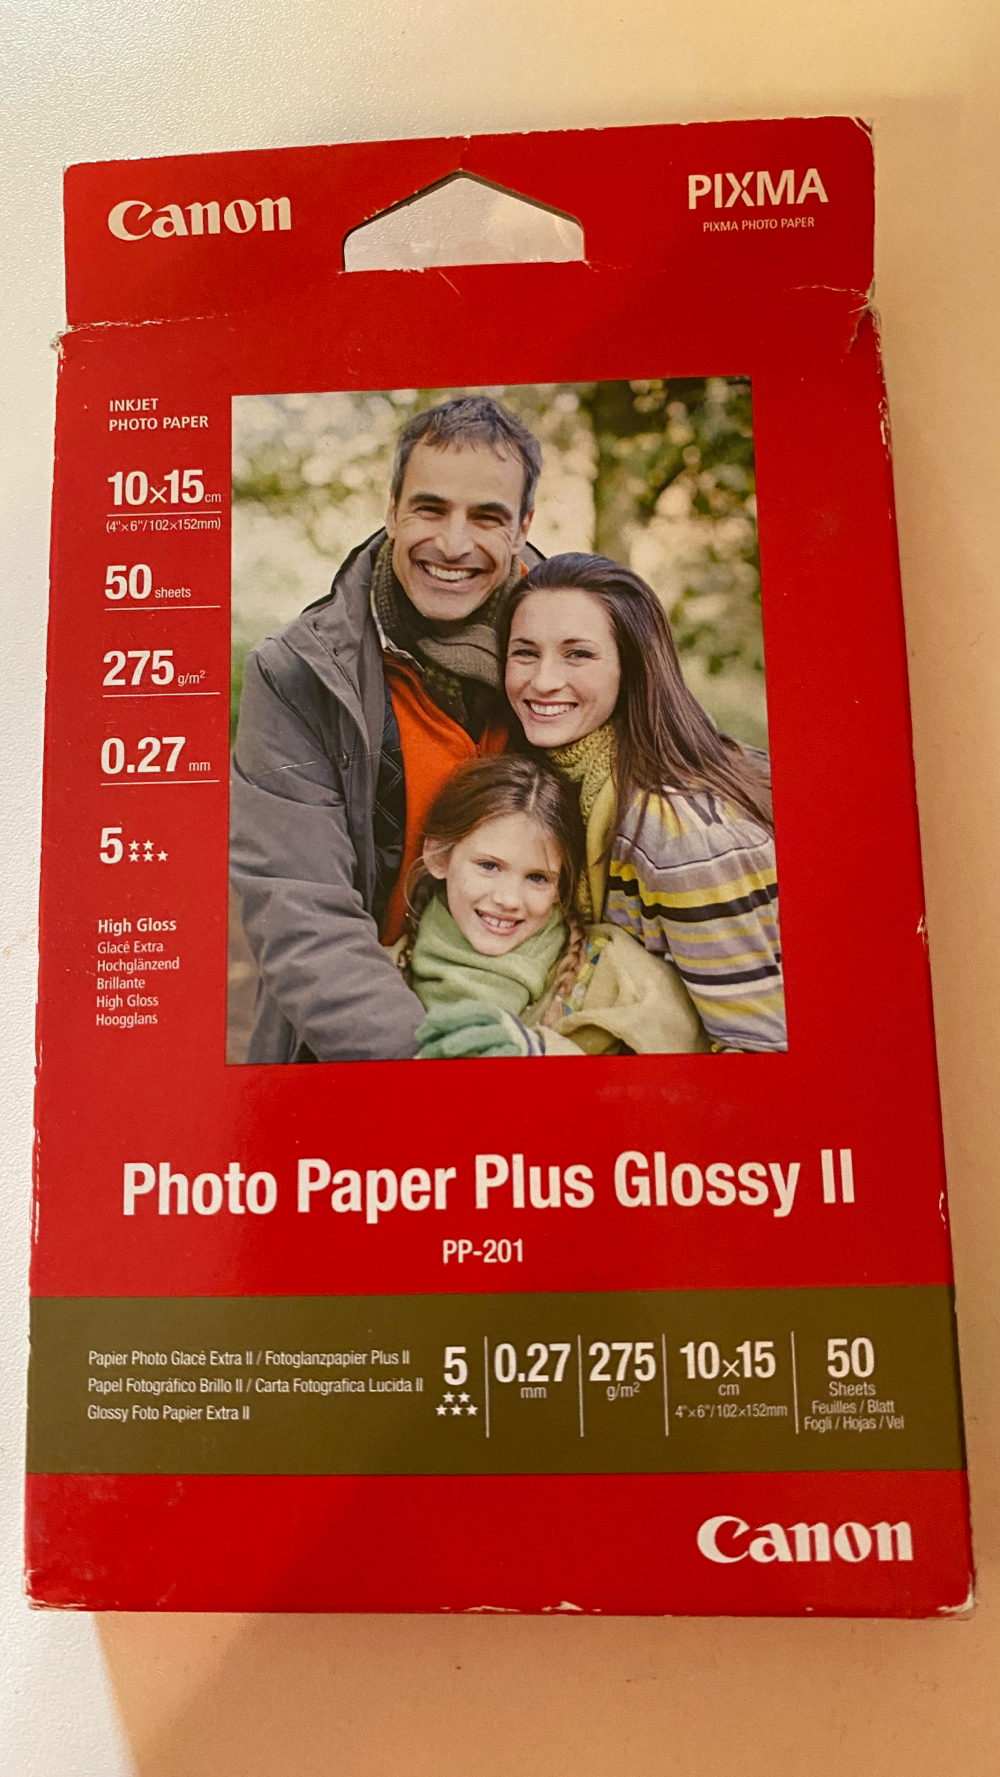 Fotopapier Photo Paper Plus Glossy Ii von Canon